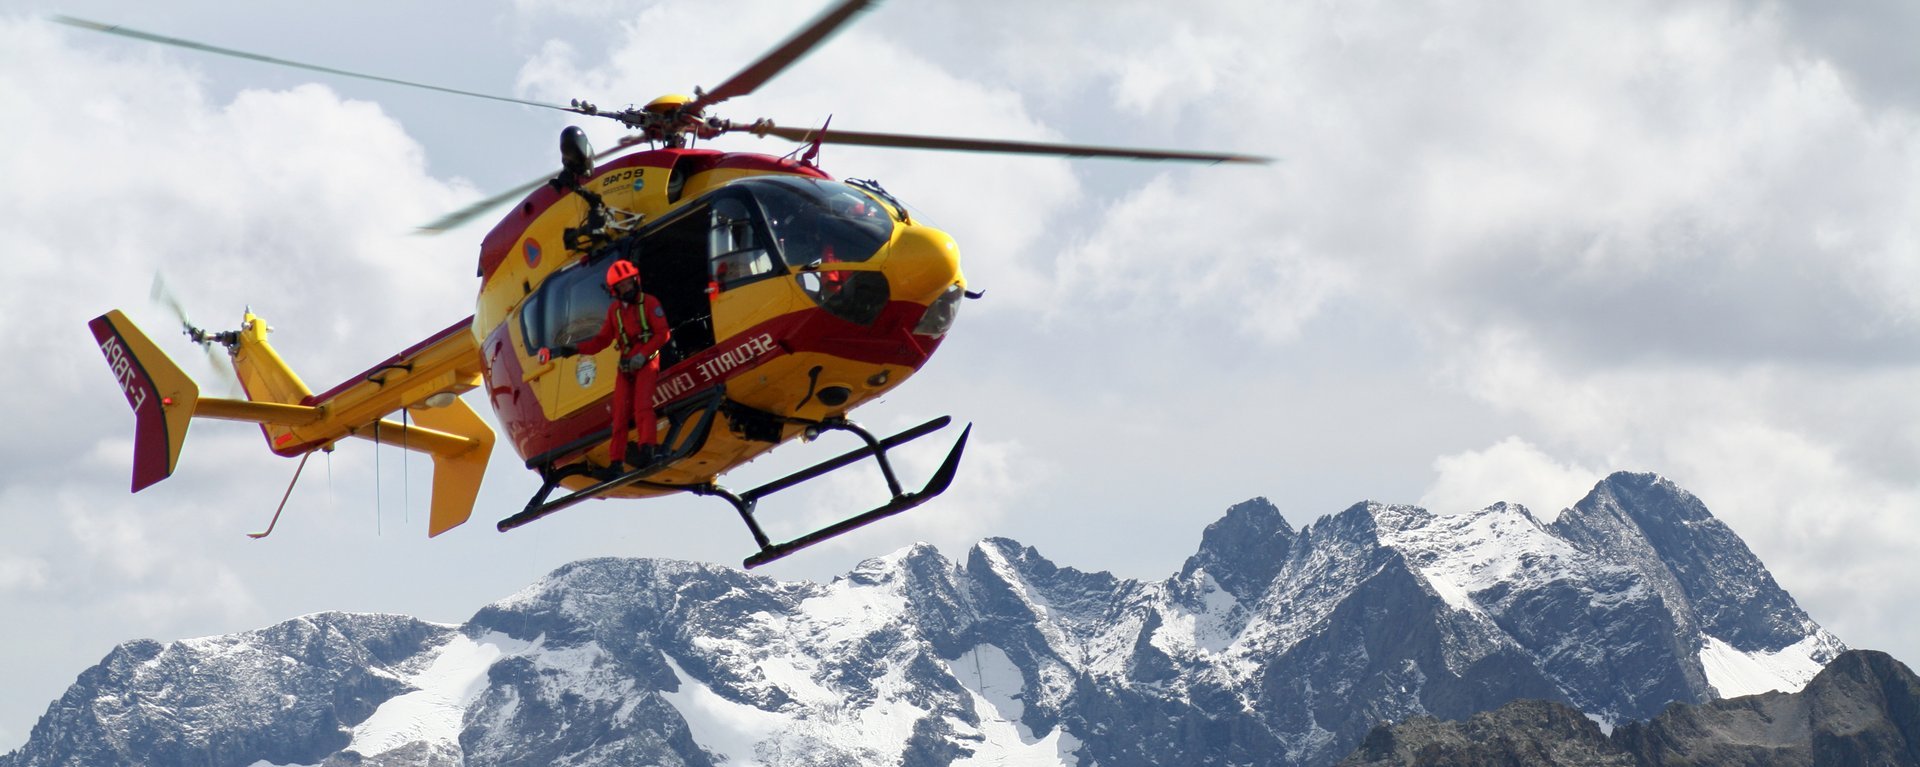 Ein Bergrettungshubschrauber mit einem Rettungshelfer fliegt über Gebirge. Der Hubschrauber im Einsatz ist im oberen linken Bildviertel platziert und befindet sich vor einem schönen Bergpanorama mit schneebedeckten Gipfeln bei einem hellen, mit Wolken bedeckten Himmel.